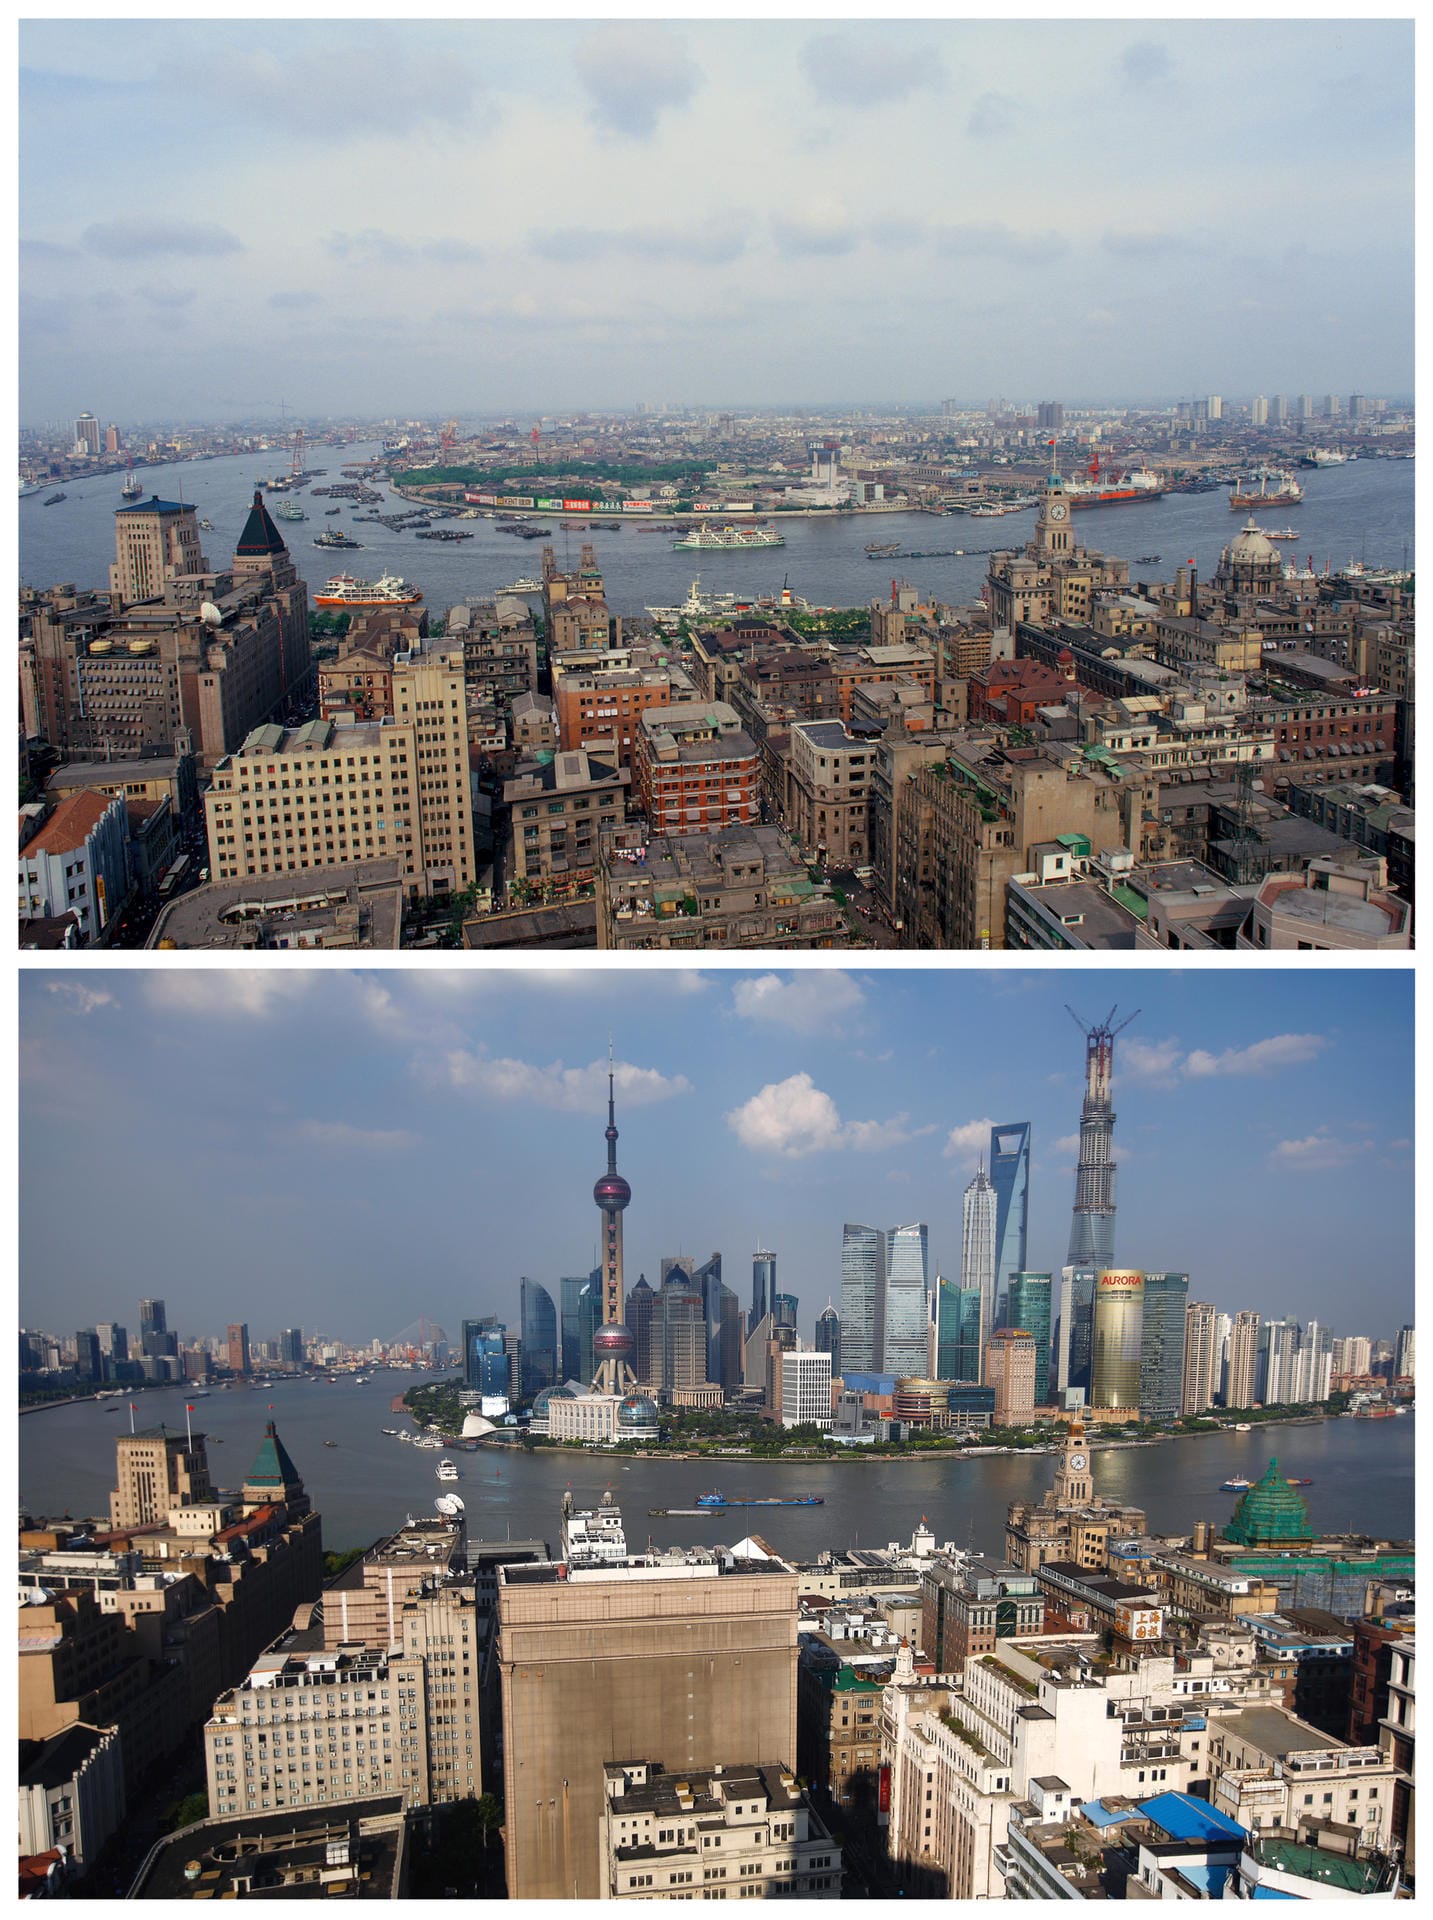 SCHANGHAI: Die obere Aufnahme zeigt die Bebauung entlang des Pudong-Flusses im Jahr 1987. 26 Jahre später ist an gleicher Stelle ein Finanzbezirk mit Wolkenkratzern entstanden.